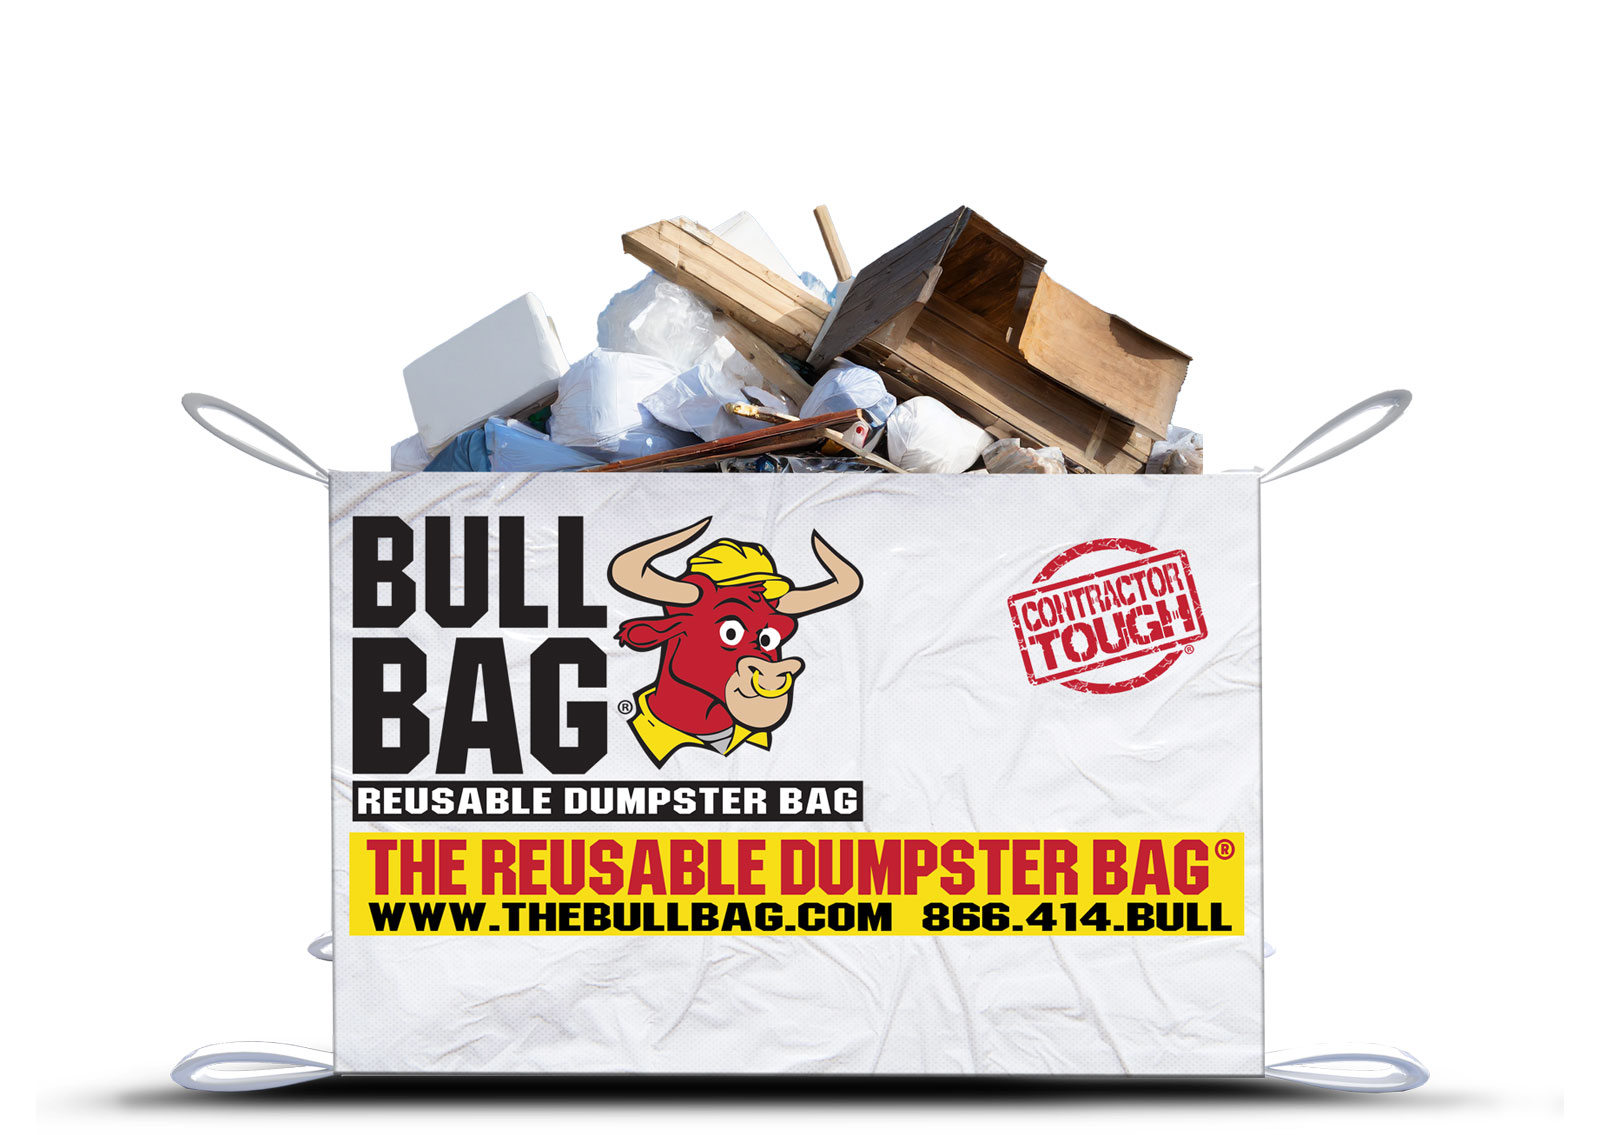 Dumpster Bag Rental CT & Dumpster Bag Pick Up Company Near Me in CT, Dumpster  Bag Services in CT, Dumpster Bag Pickup Services CT, Dumpster Bag Pick Up  CT, Dumpster Bag Pick